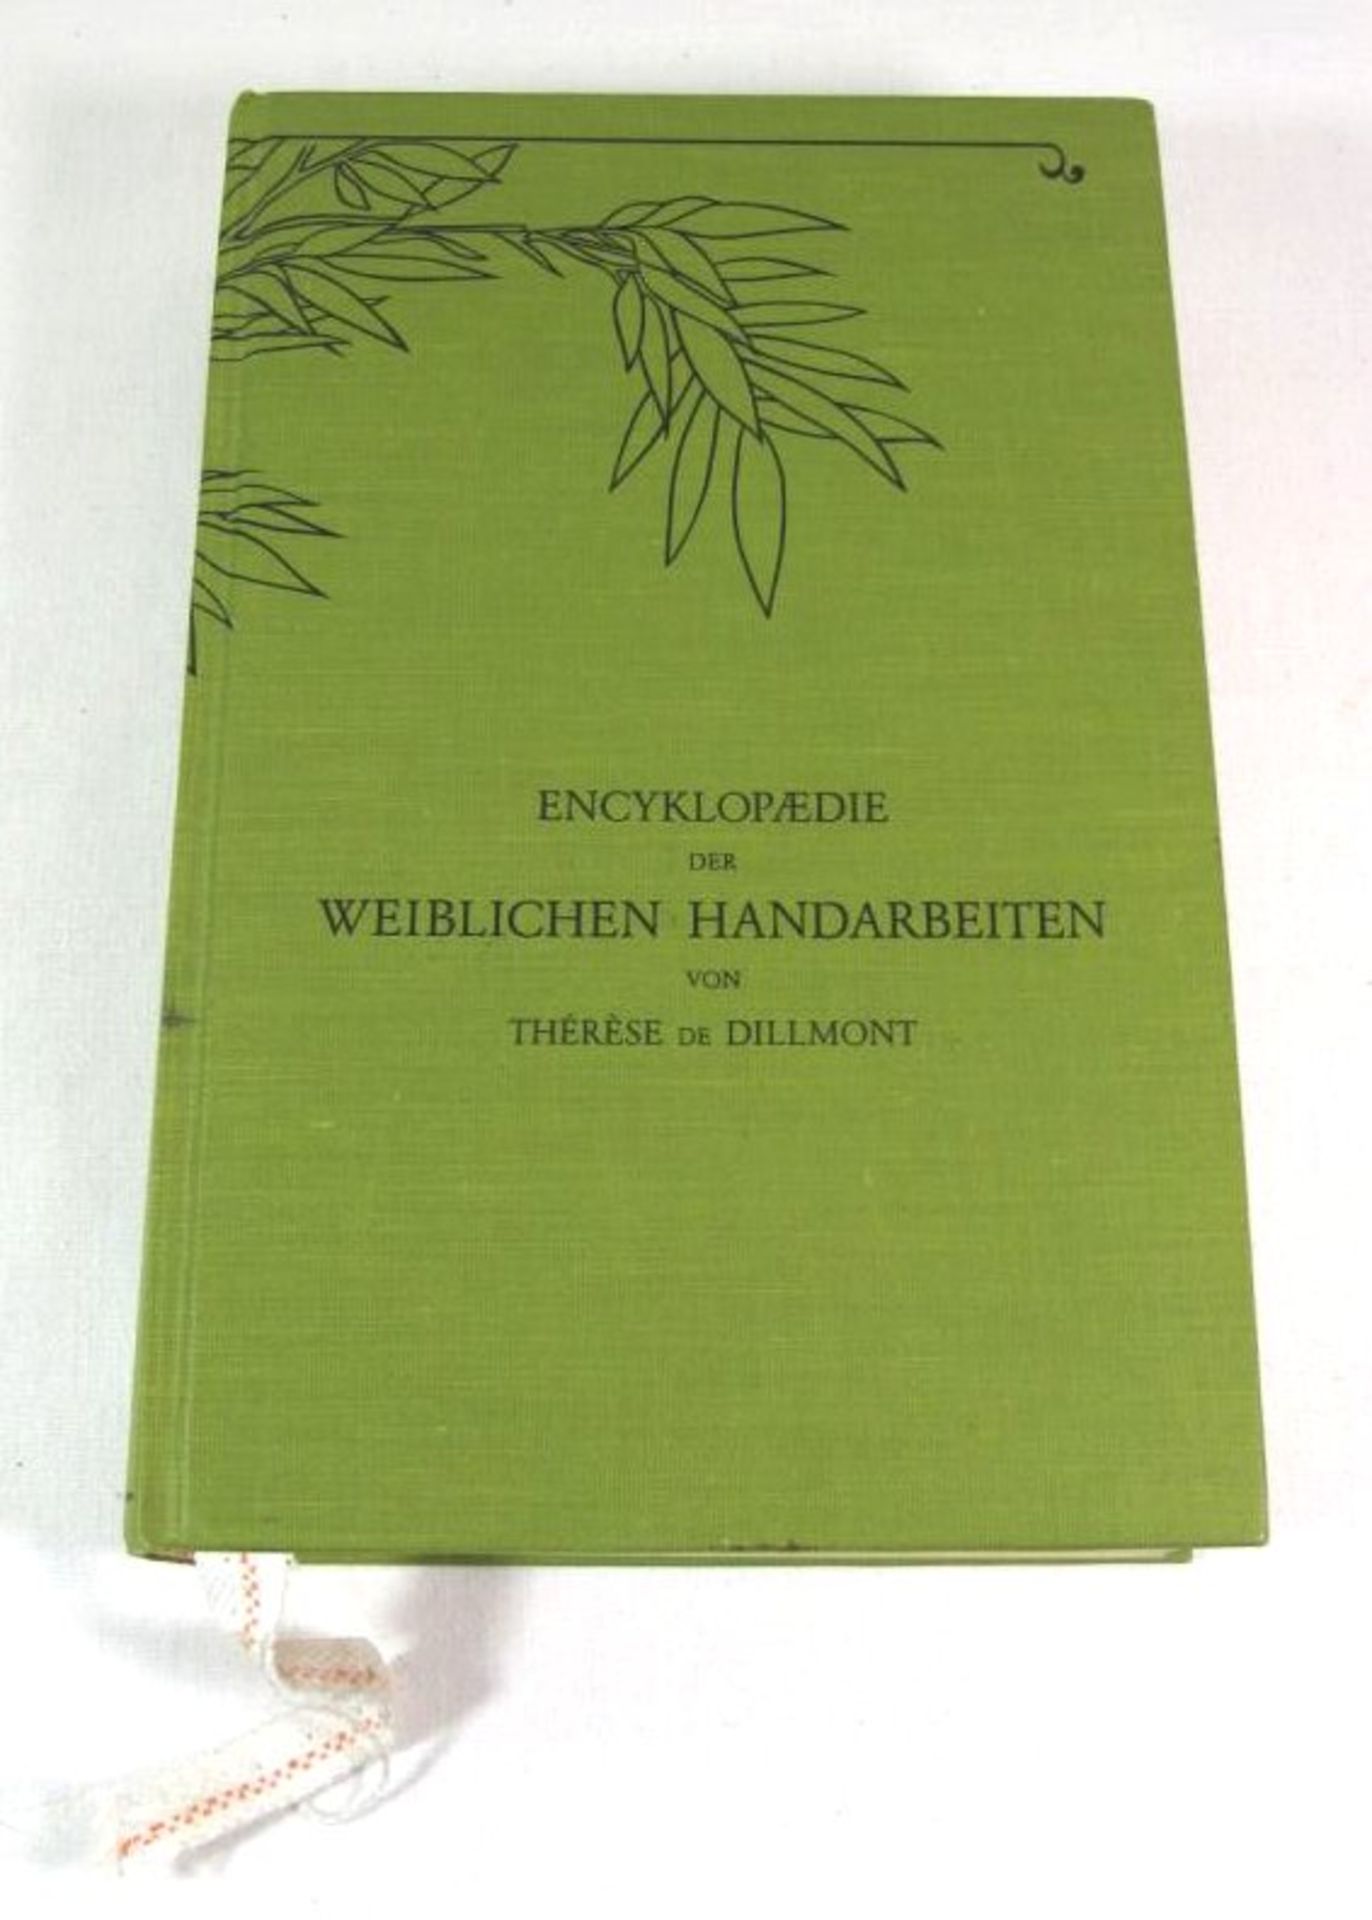 Encyklopädie der weiblichen Handarbeiten, reprint der Ausgabe von 1908, Thérése de Dillmont.